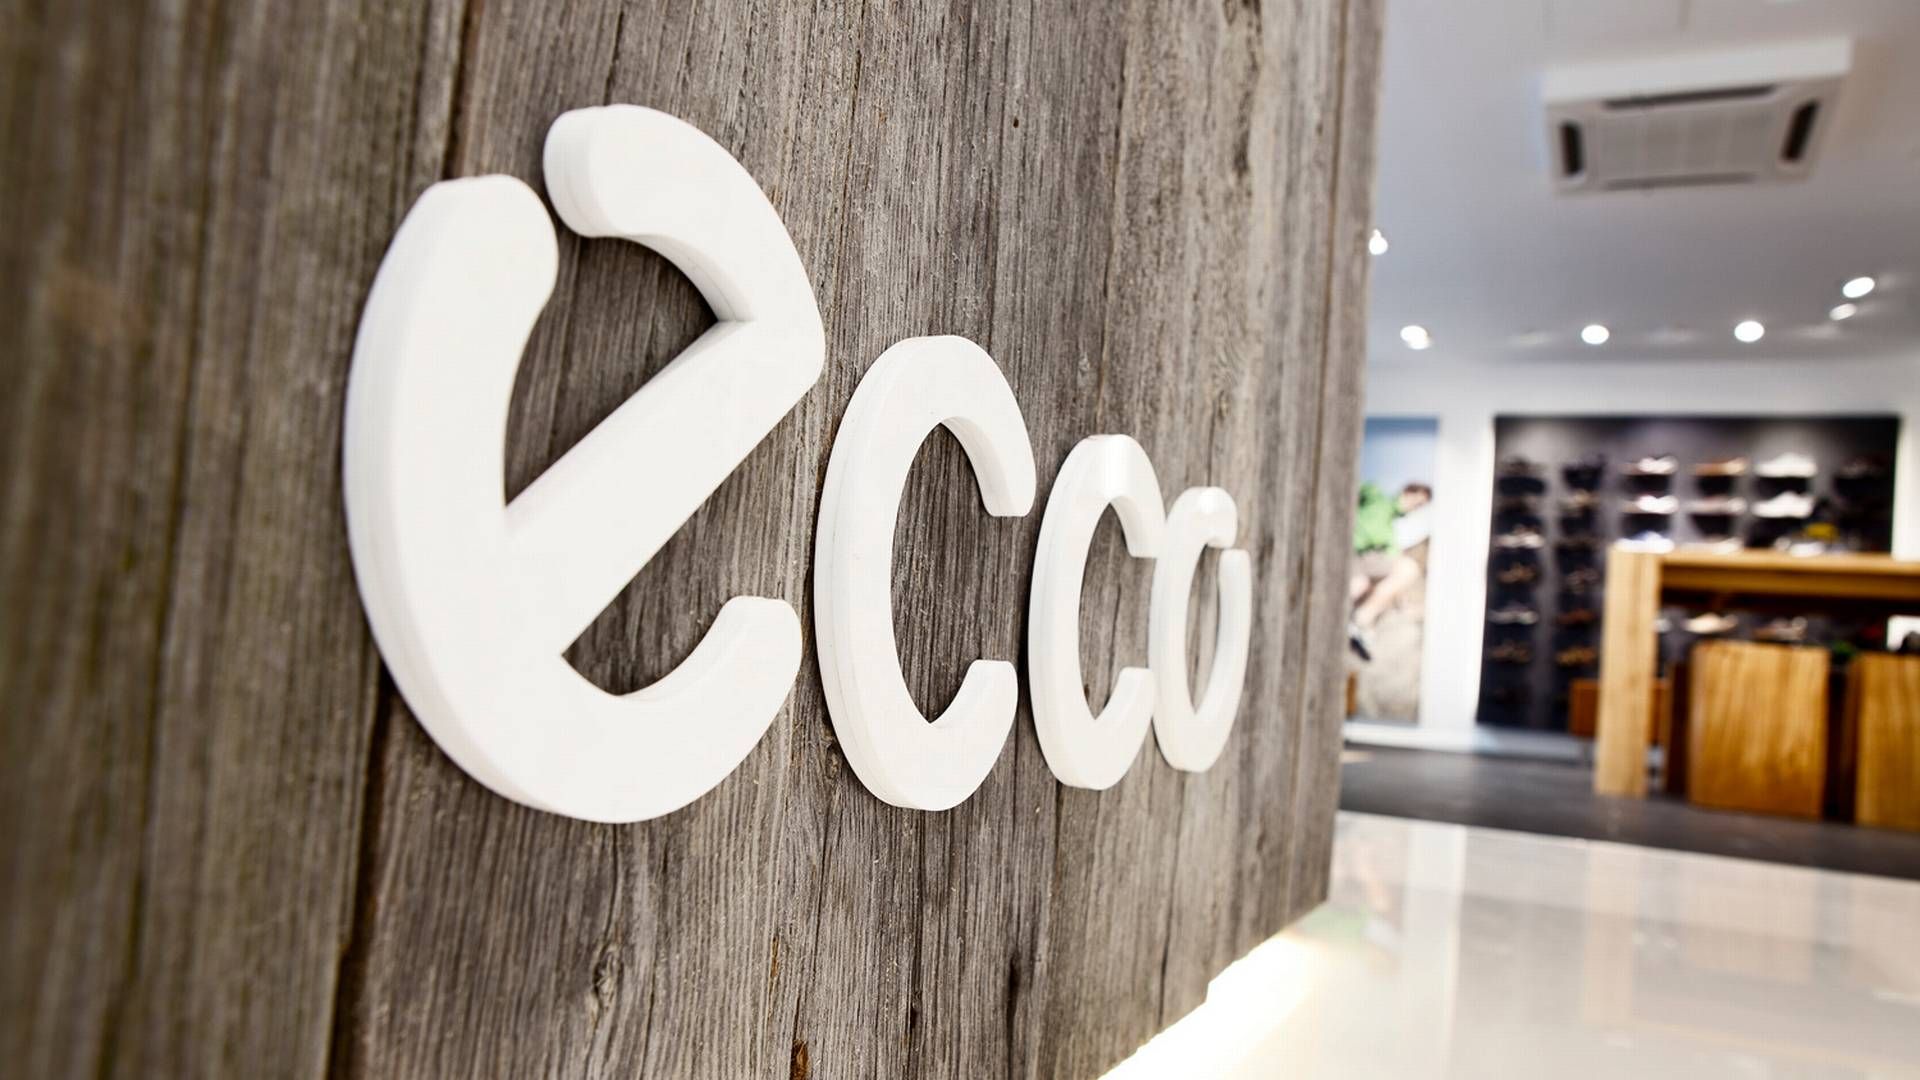 Rusland er blandt Eccos største markeder med over 200 butikker og 1.800 ansatte. | Foto: Pr / Ecco